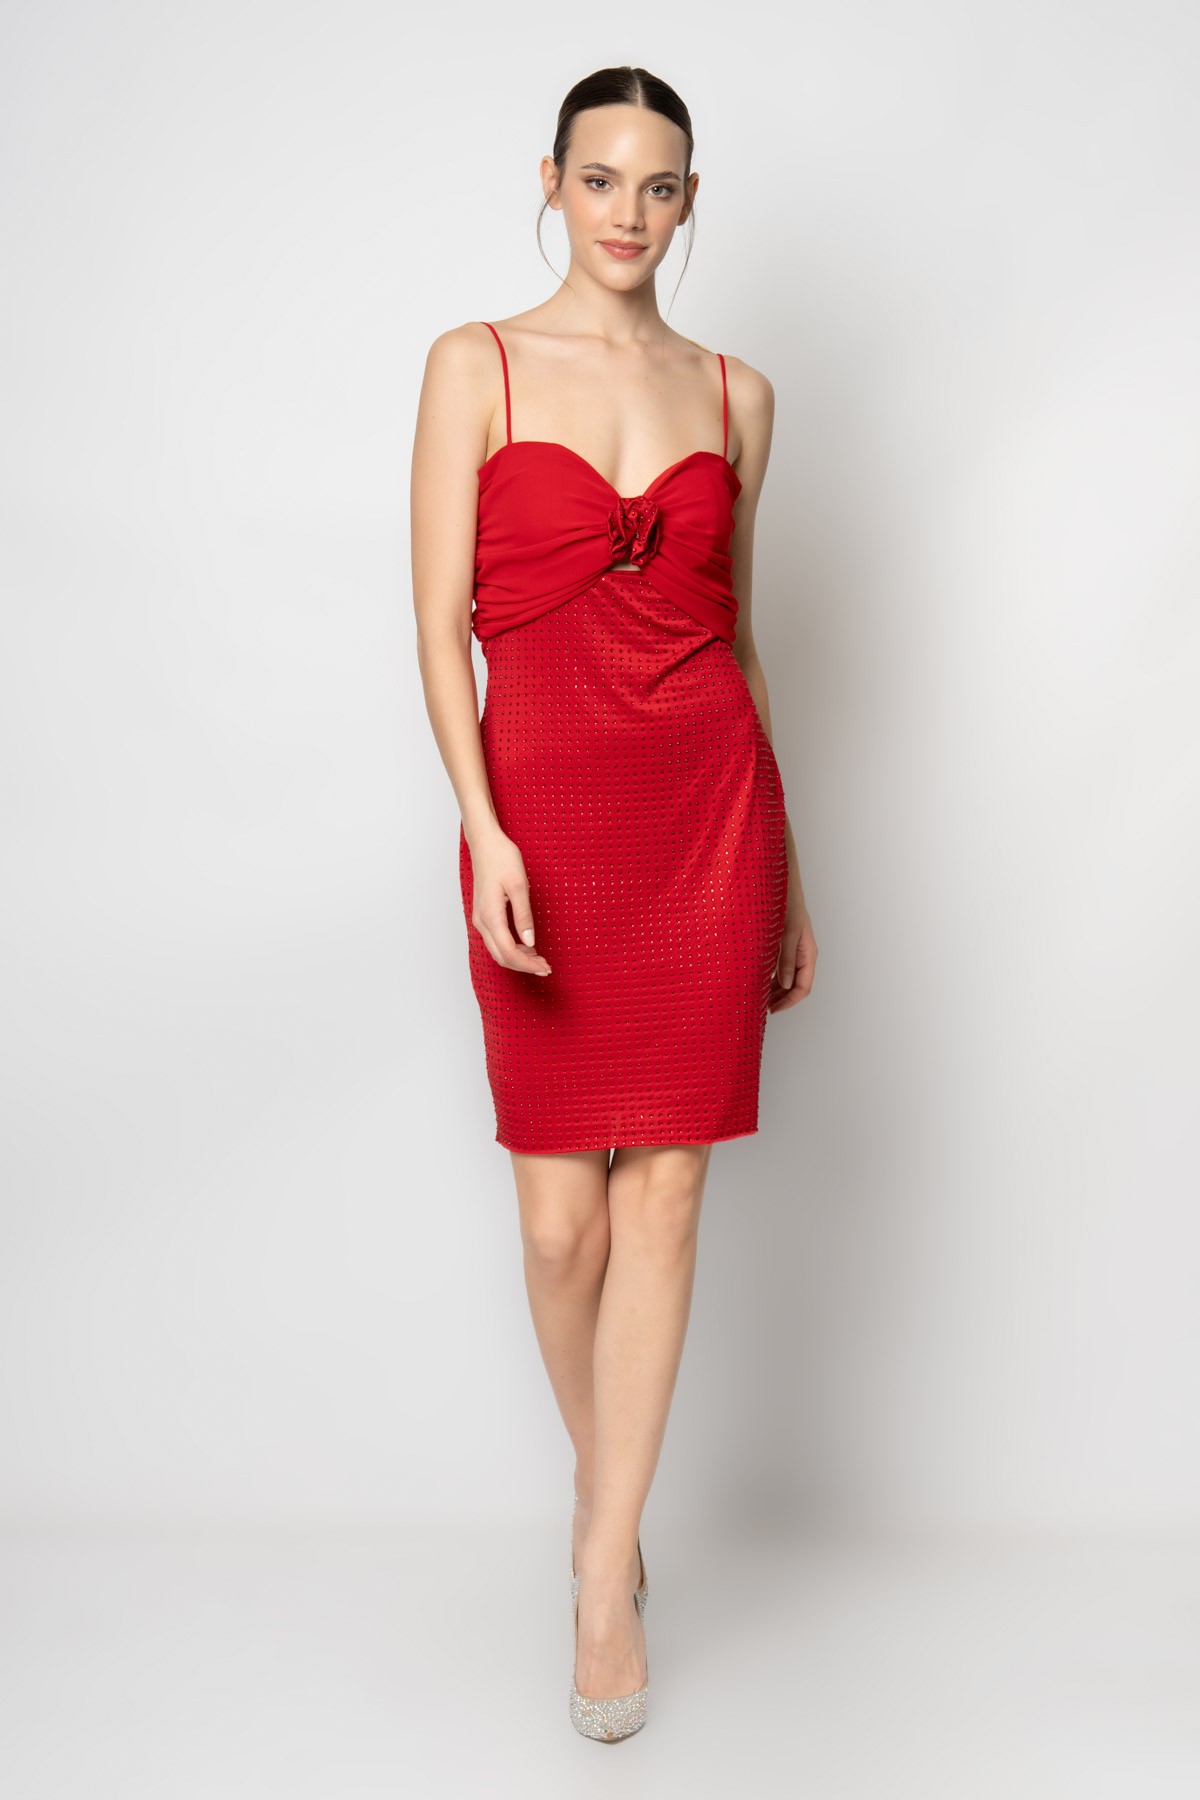 Göğüs ortası büzgülü çiçekli eteği taşlı örme kumaş abiye elbise - Kırmızı